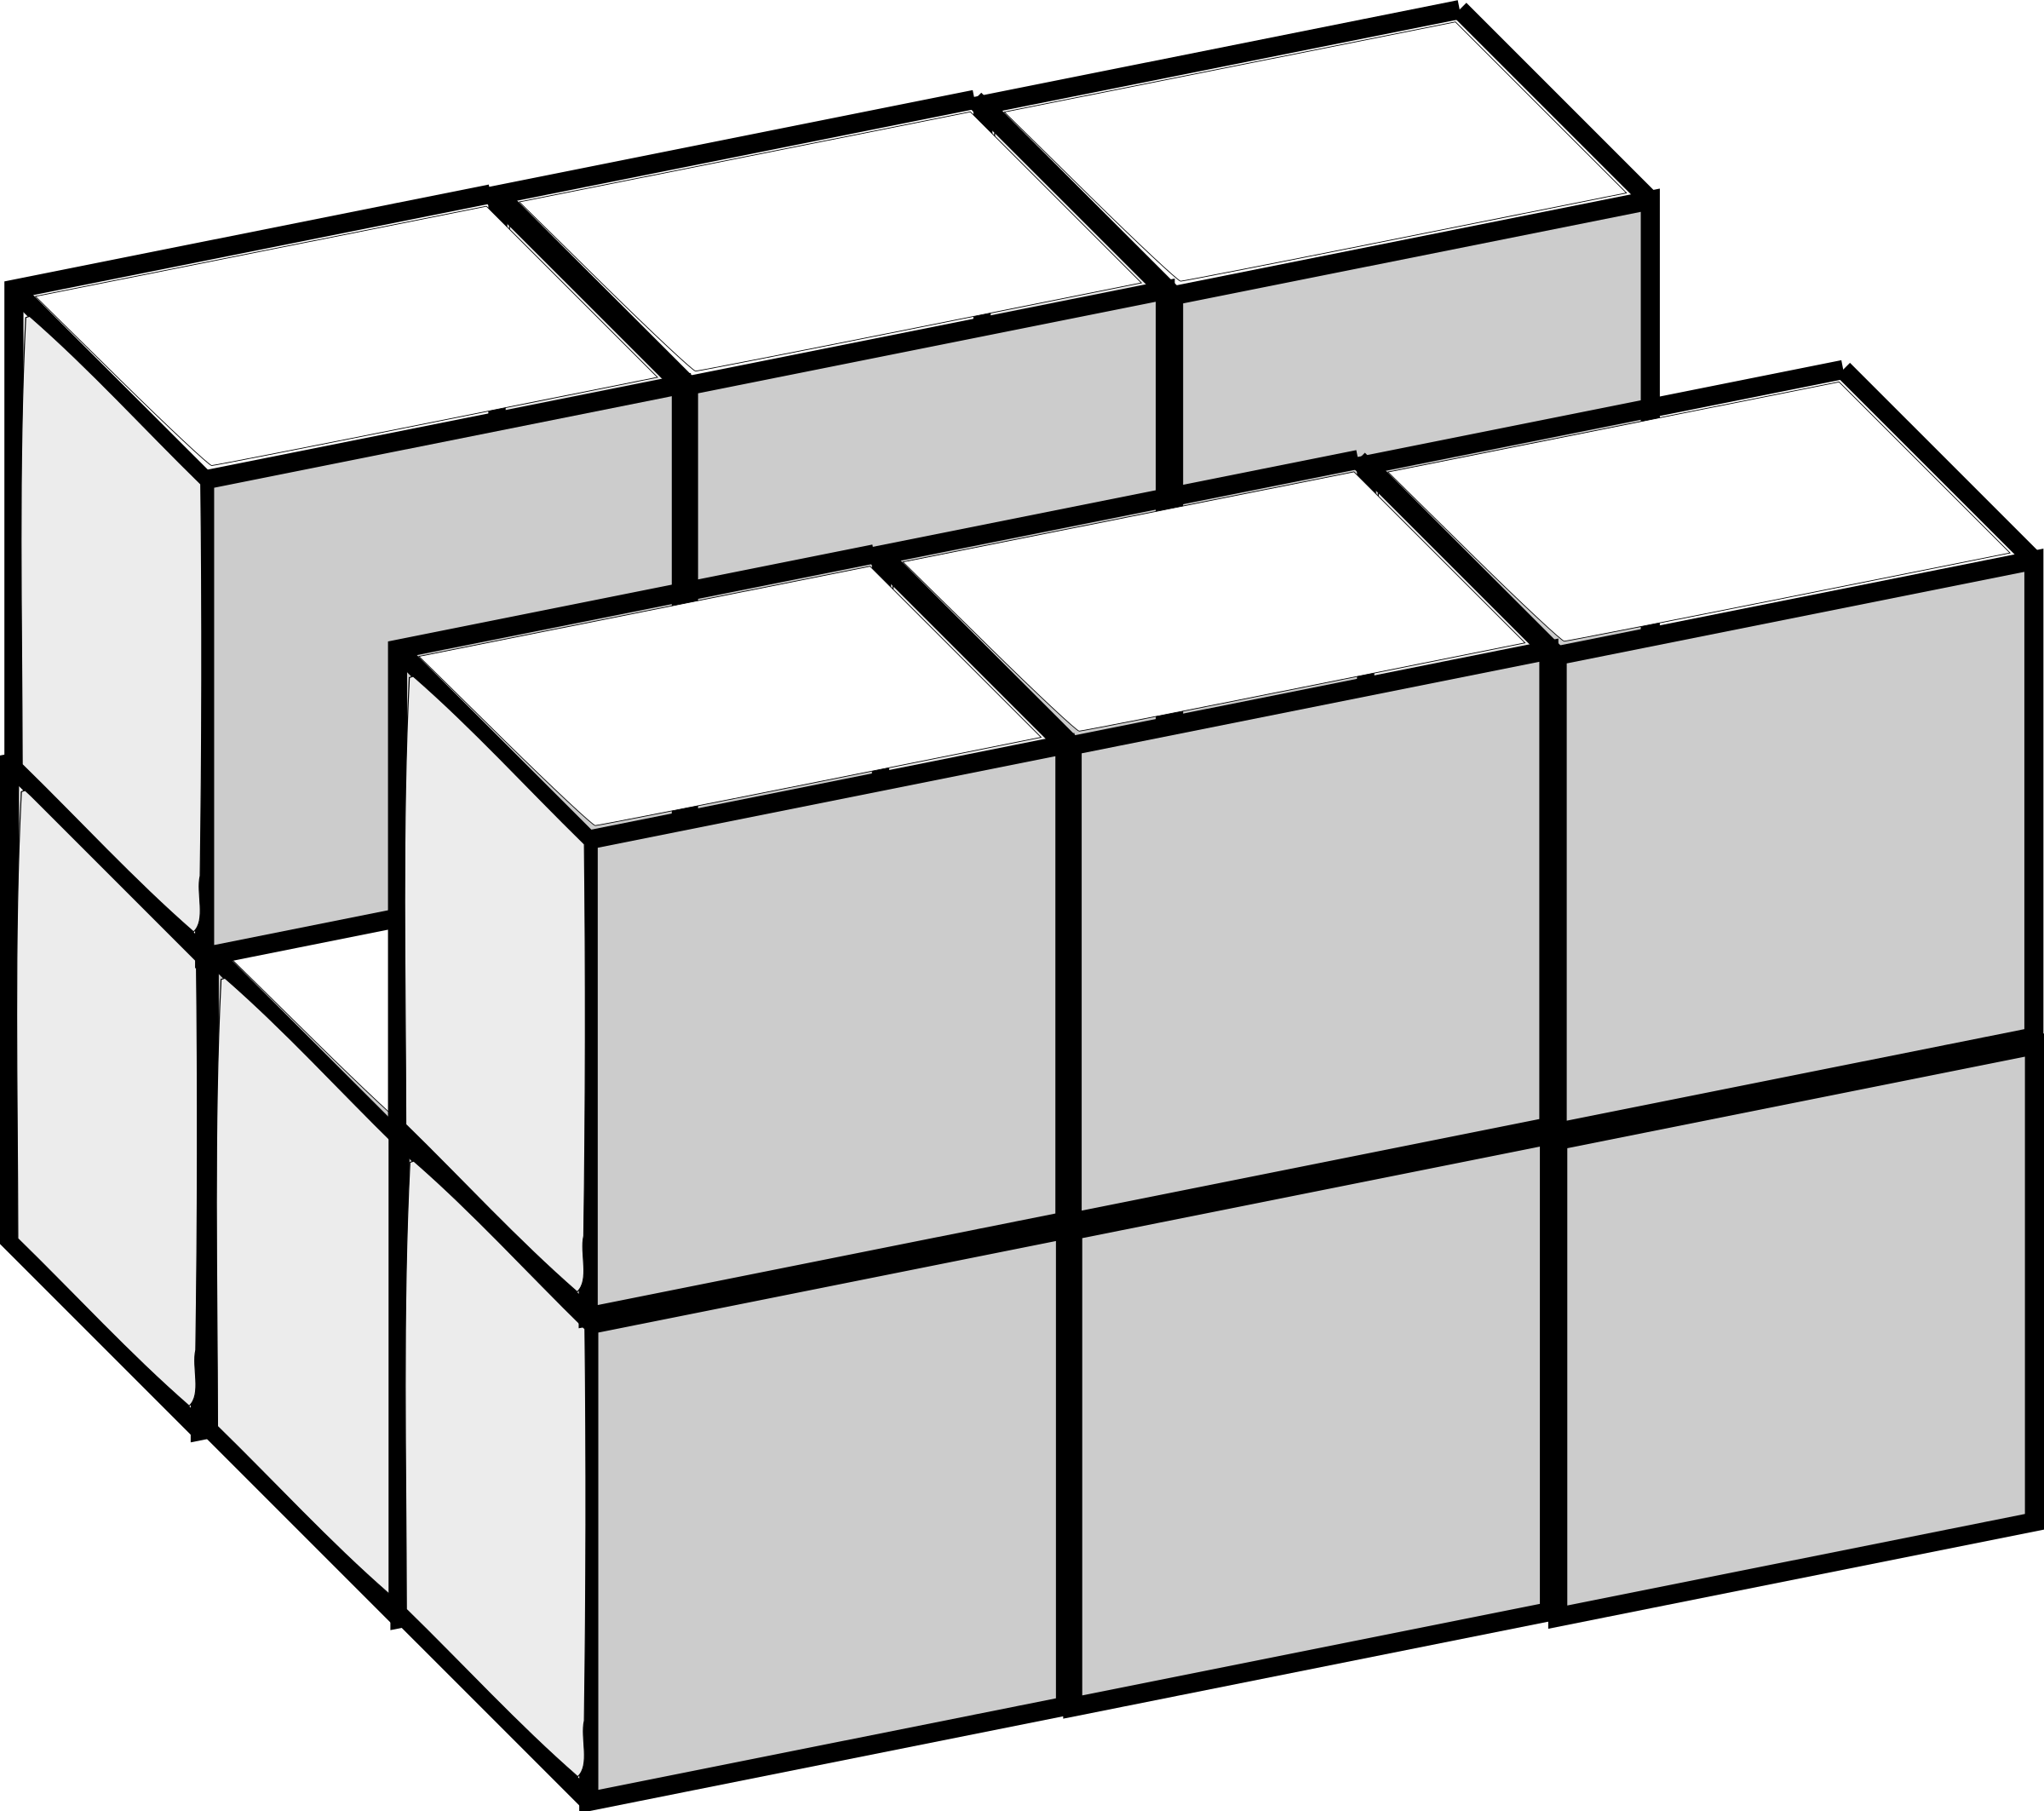 Big Image - Treris 3 Blocks (2400x2126)